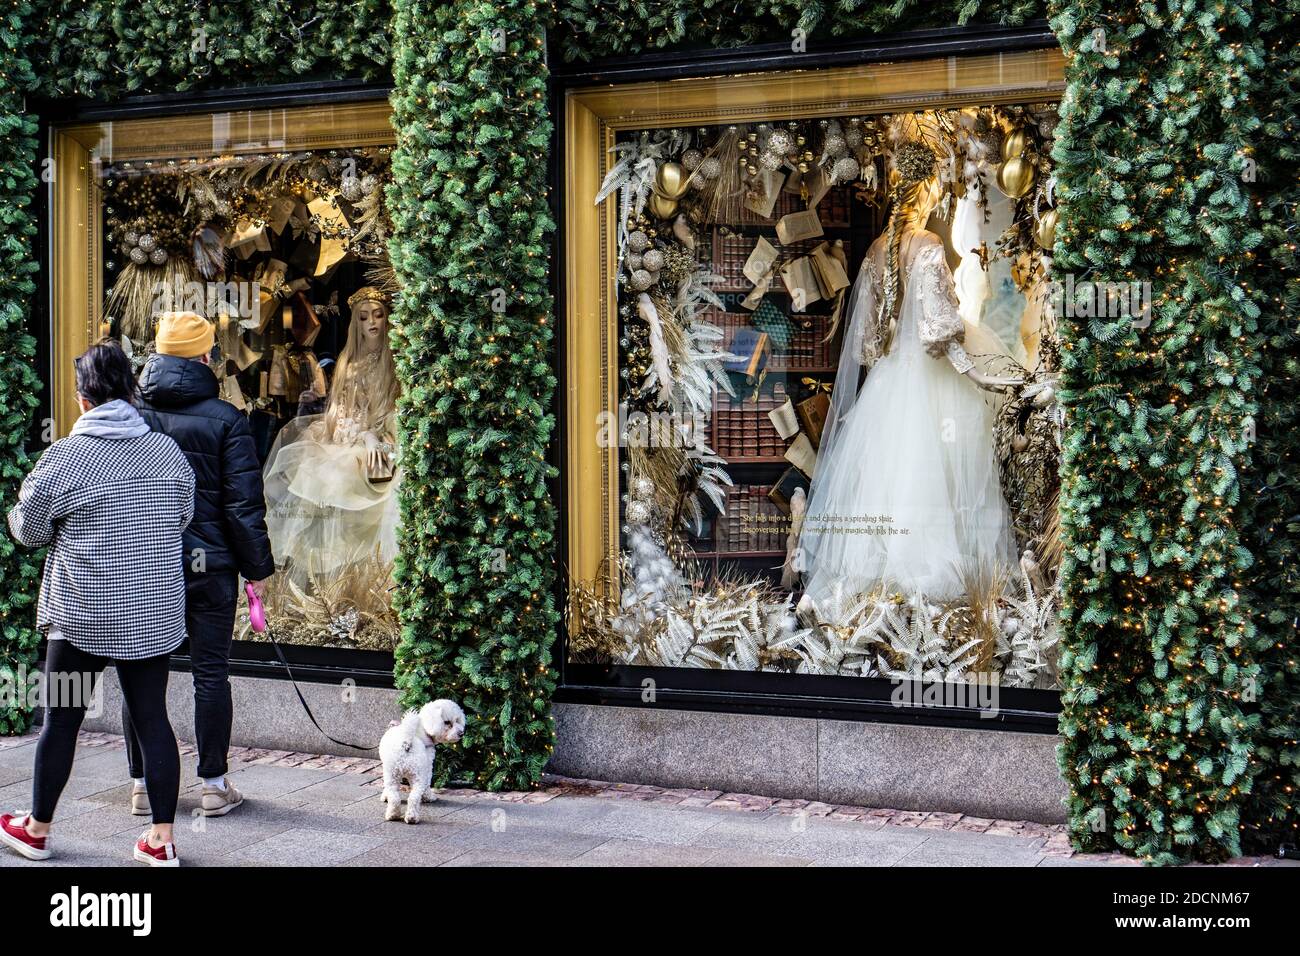 La finestra di Natale a Brown Thomas a Dublino, Irlanda. Il tema di quest'anno è "sognare di" che raffigura un mondo di fare credere e di fantasia. Foto Stock